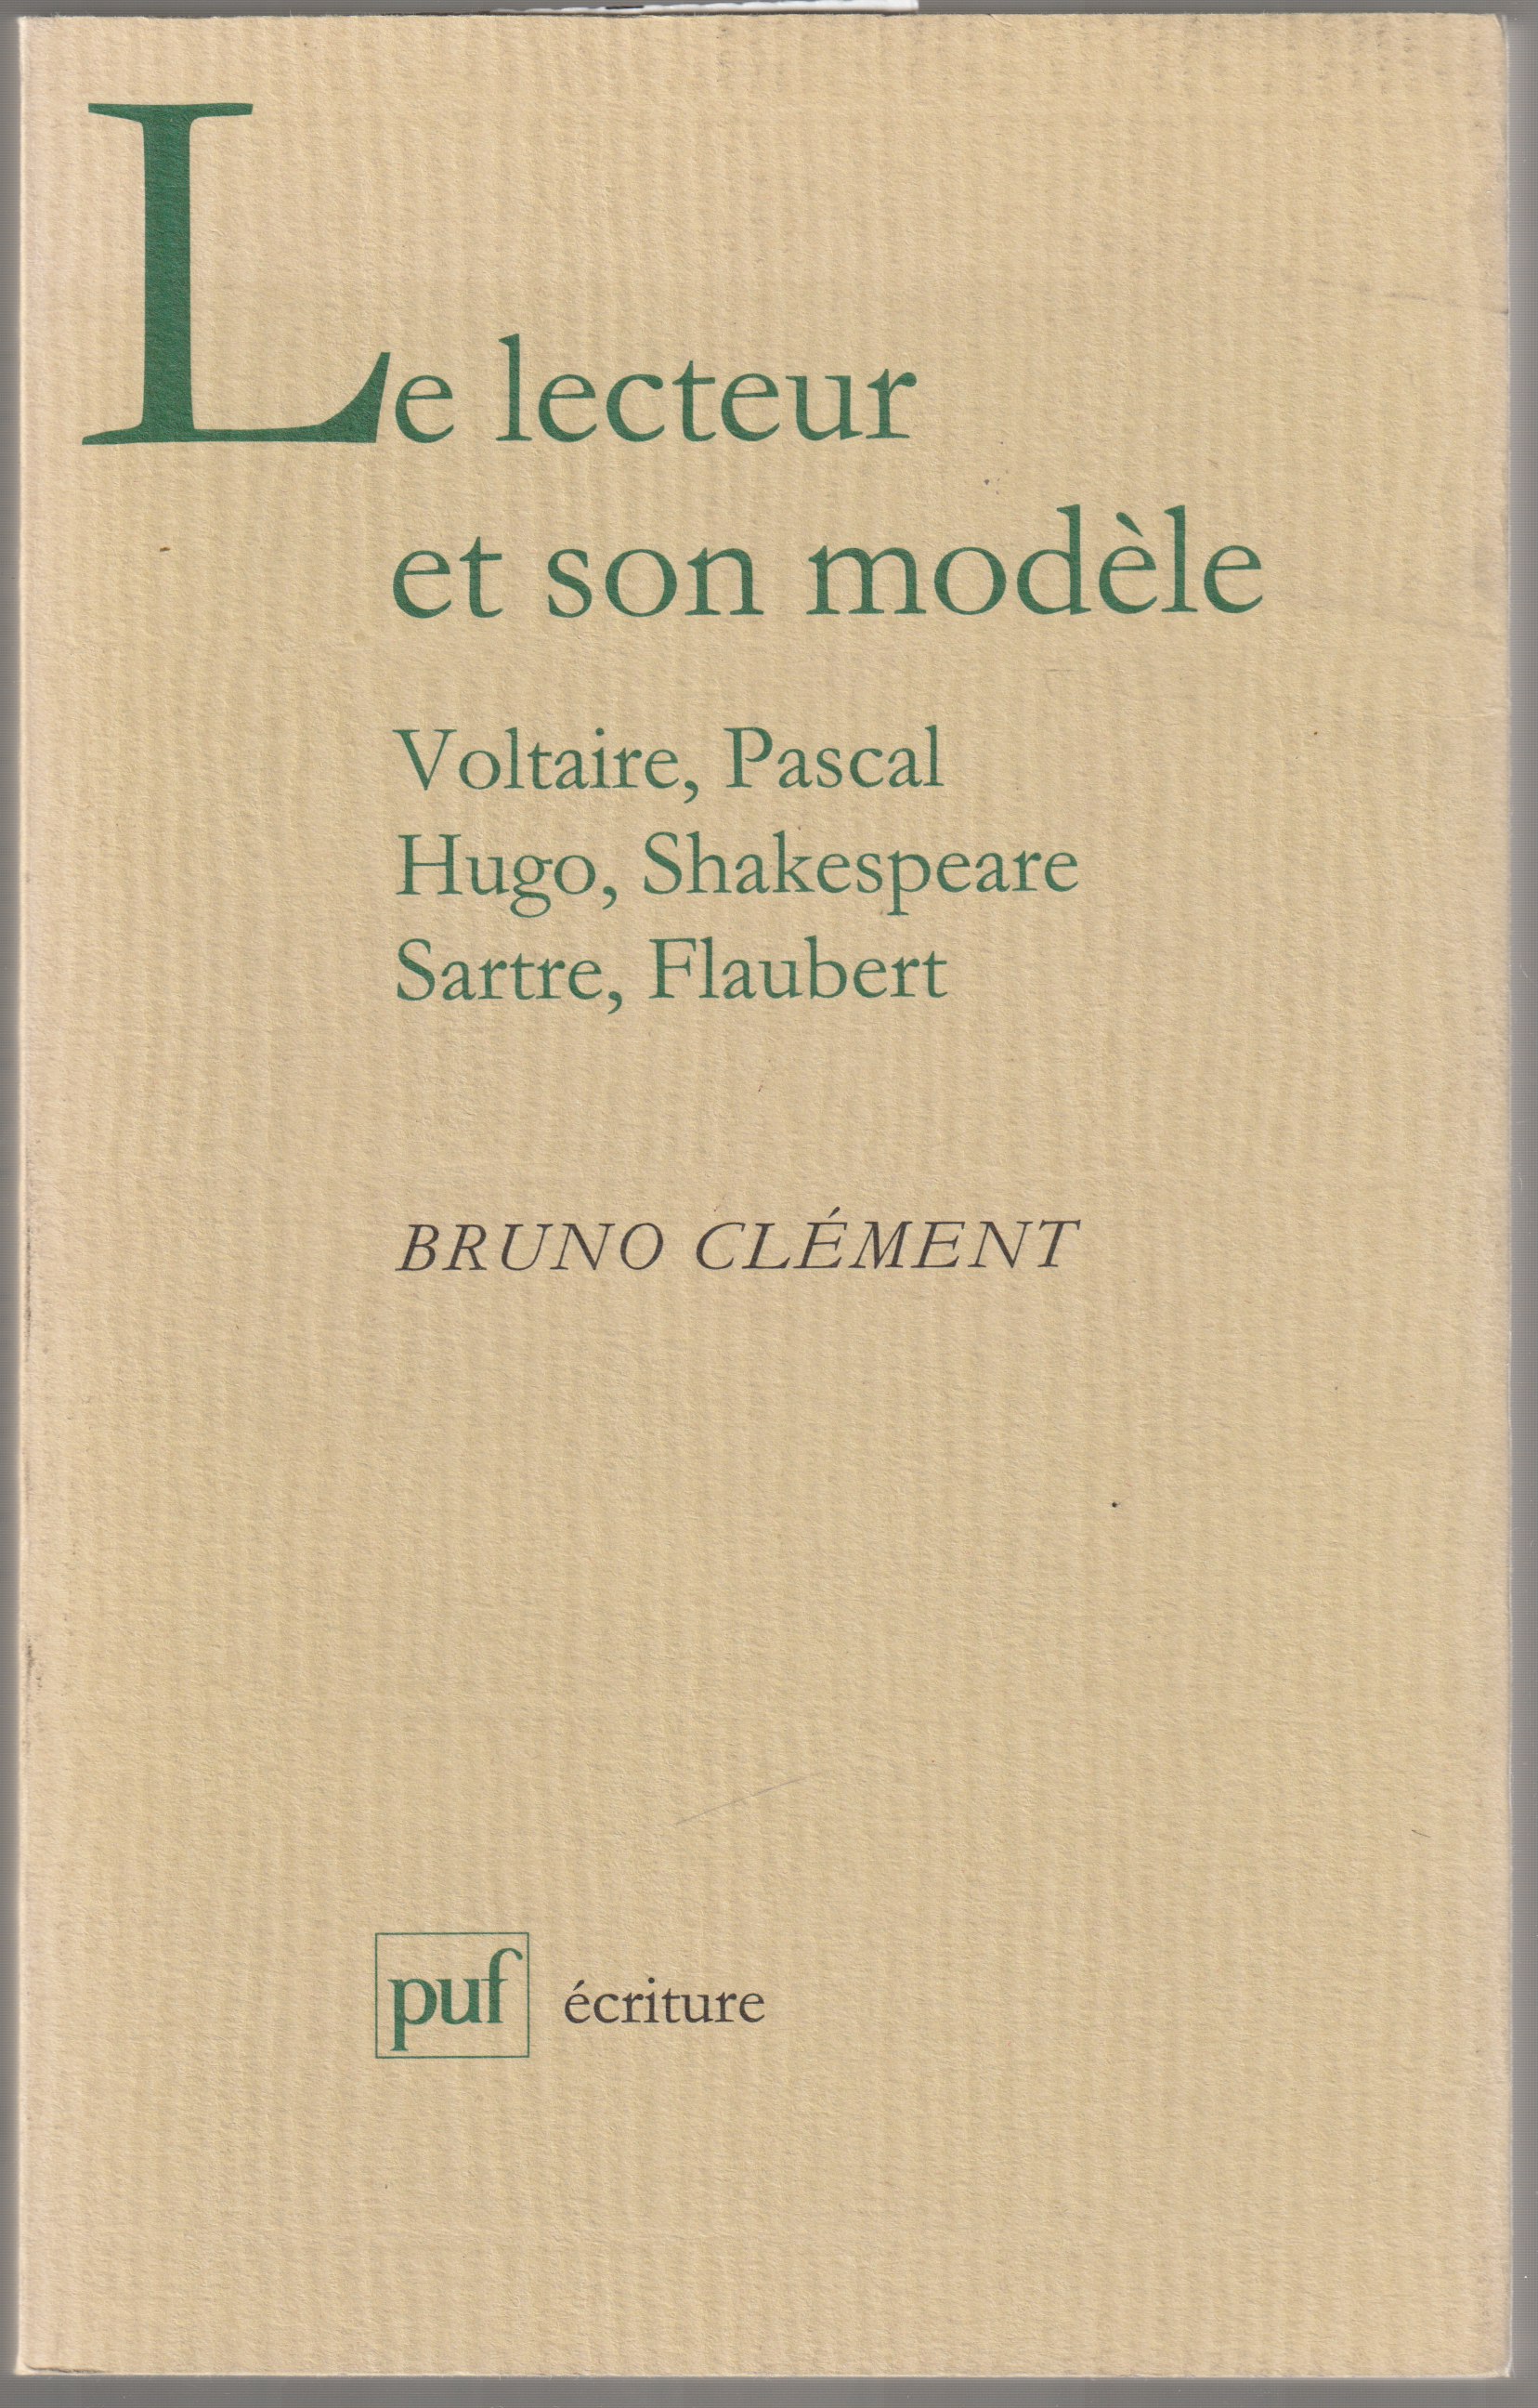 Le lecteur et son modele : Voltaire, Pascal, Hugo, Shakespeare, Sartre, Flaubert